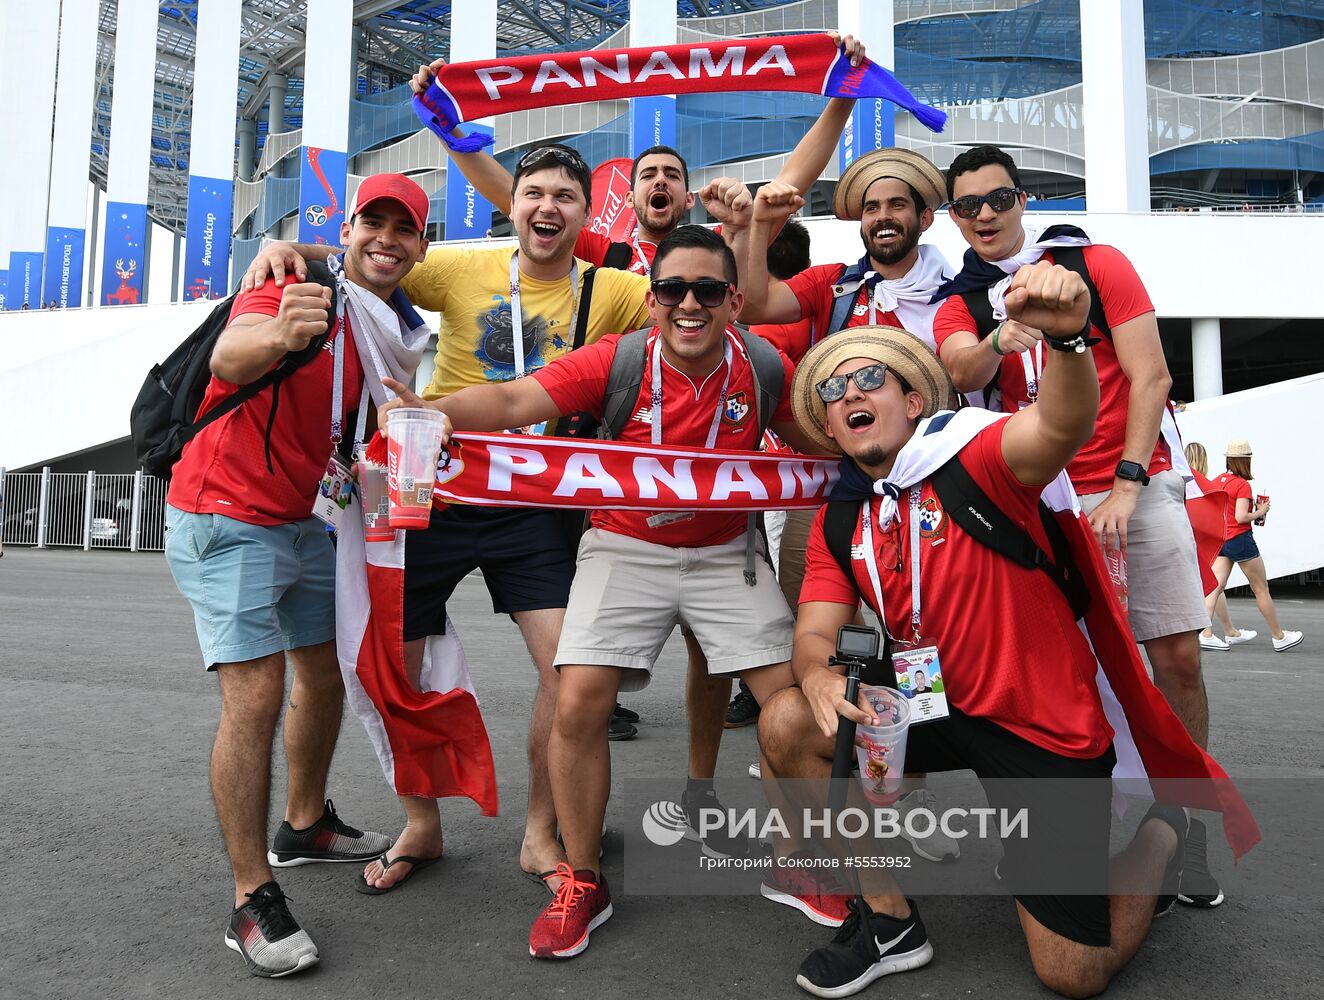 Болельщики перед матчем ЧМ-2018 по футболу между сборными Англии и Панамы